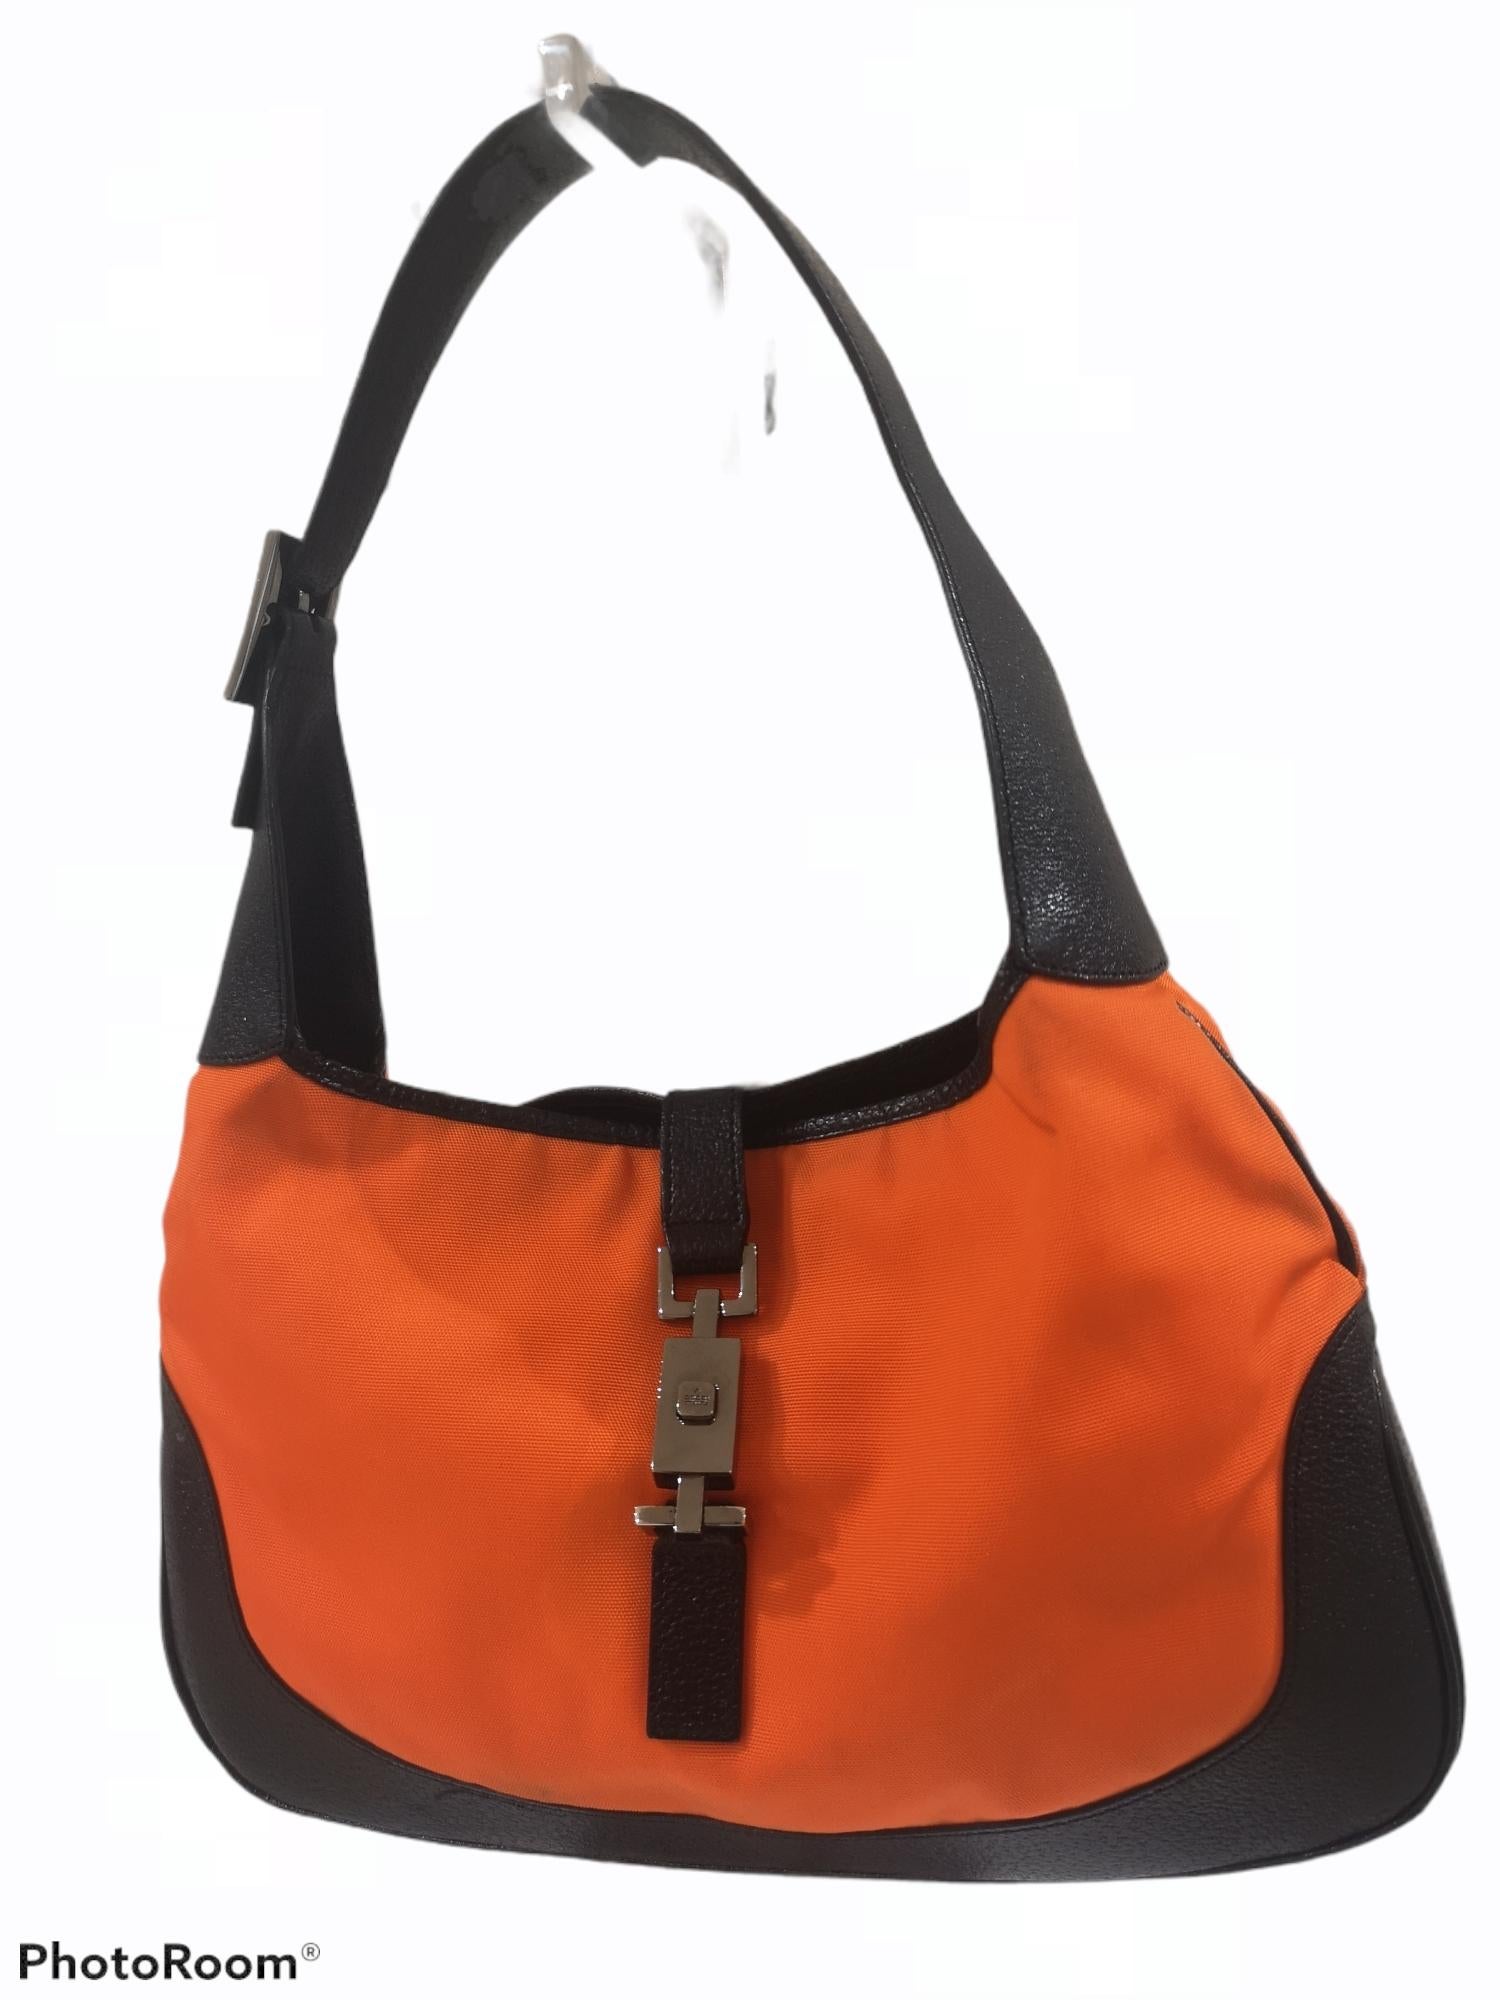 Gucci black leather orange fabric Jackie shoulder bag
Measurements: 21 * 33 cm - Total heigh shoulder strap included 41 cm
depth 4 cm